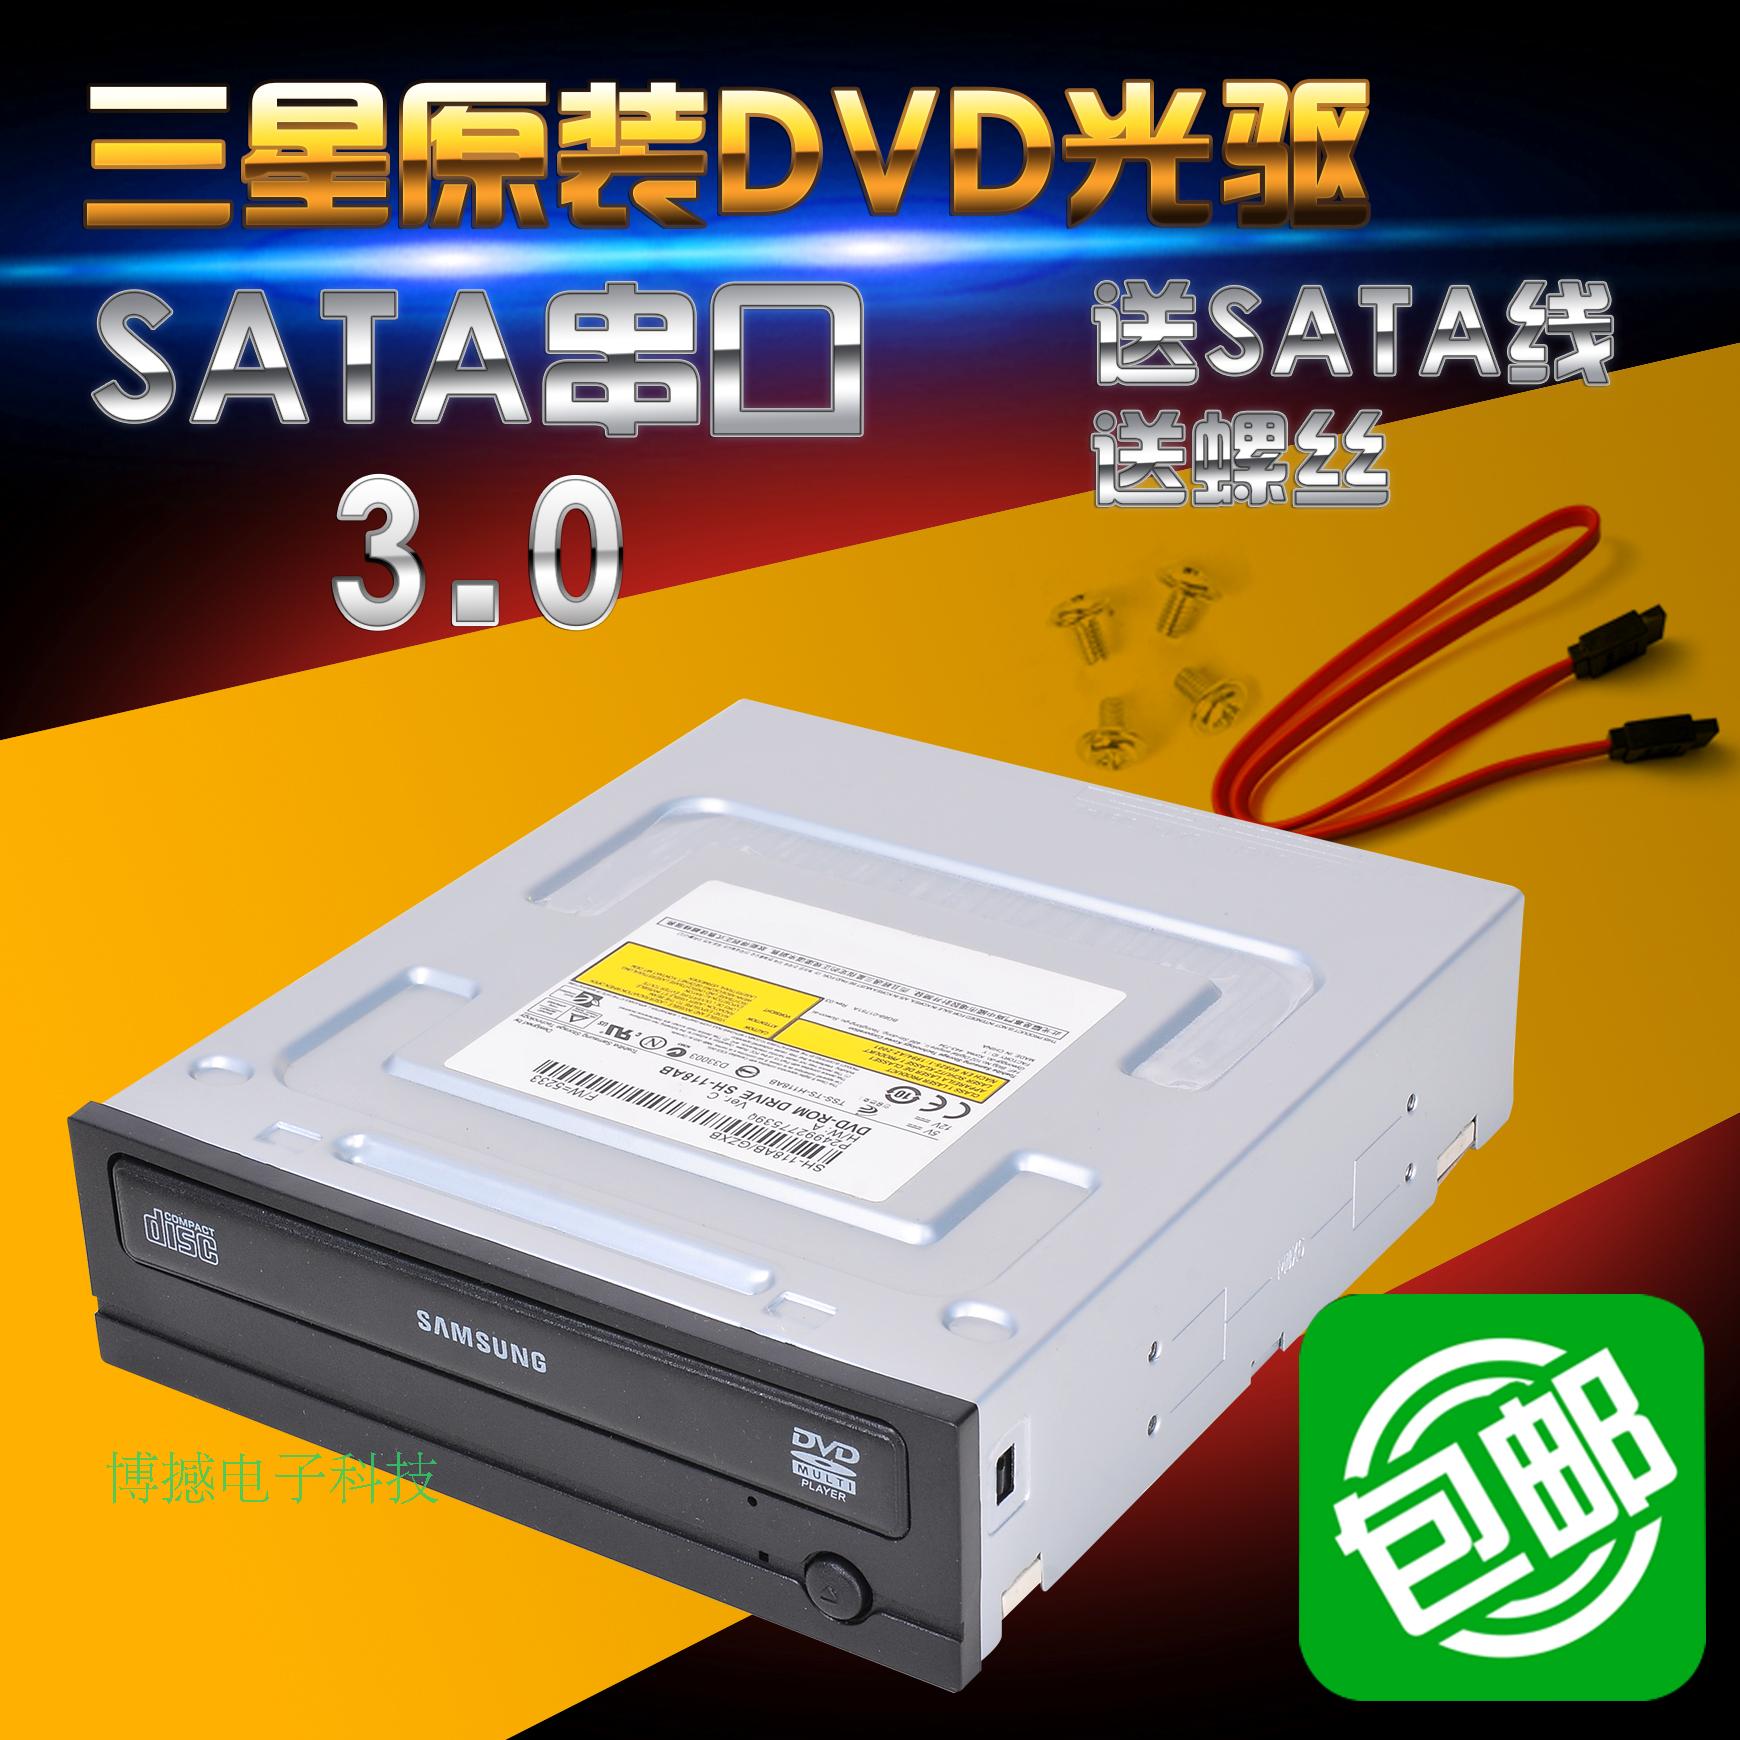 包邮 三星SATA串口DVD-ROM光驱 电脑台式机内置SATS串口DVD光驱